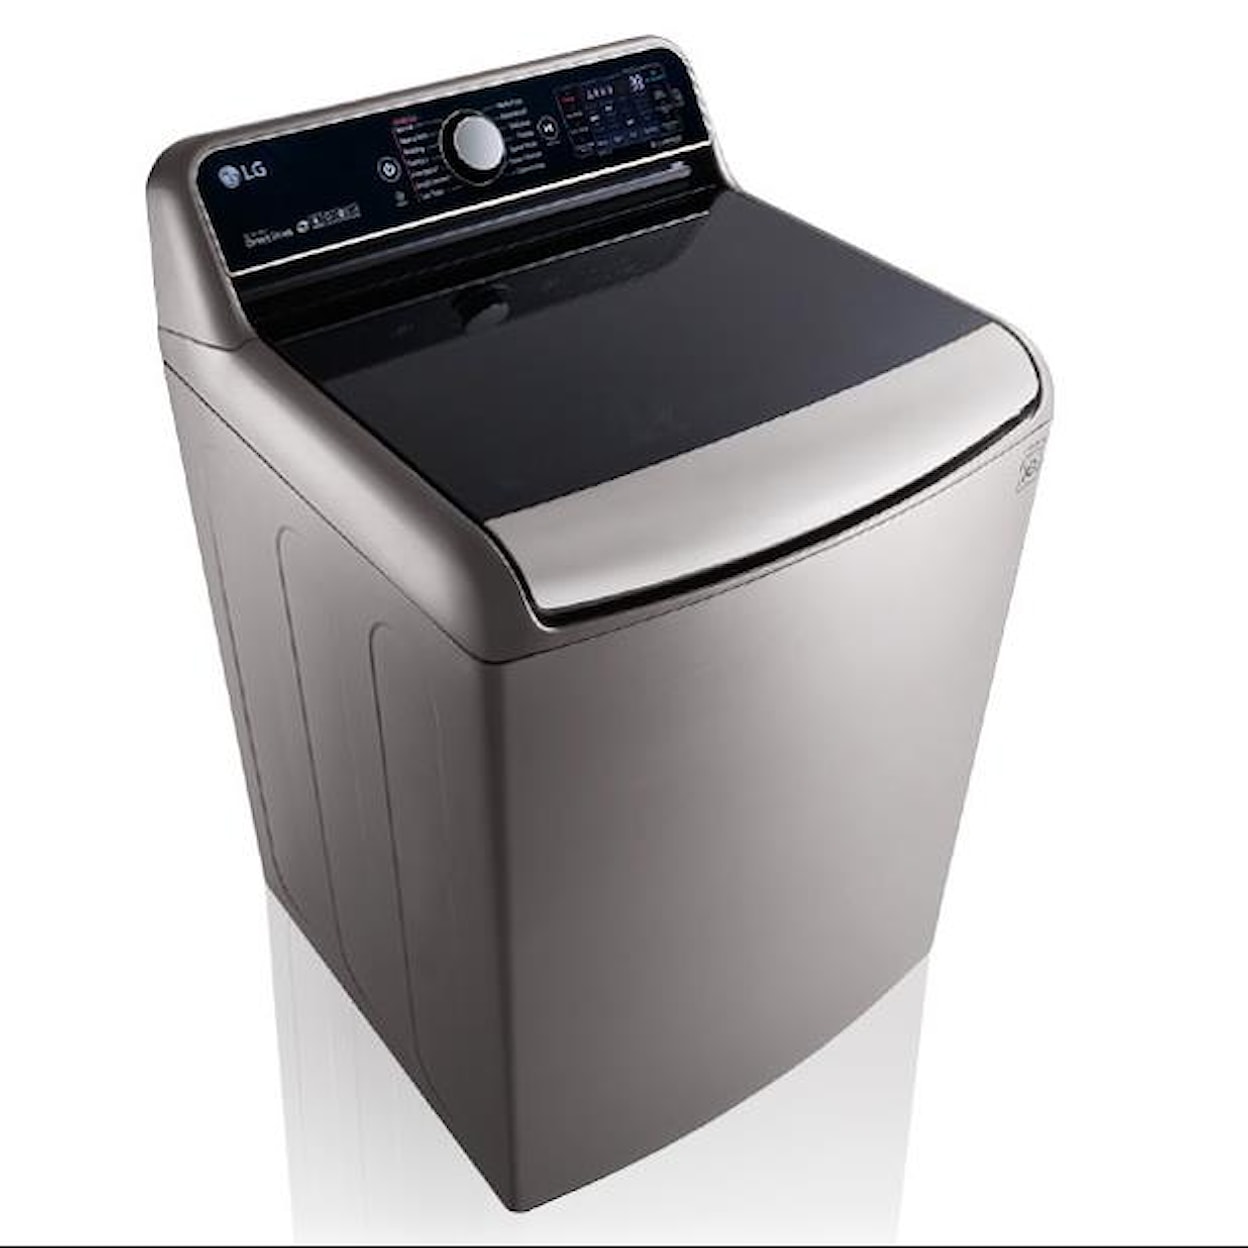 LG Appliances Washers 5.7 Cu. Ft. TurboWash® Washer